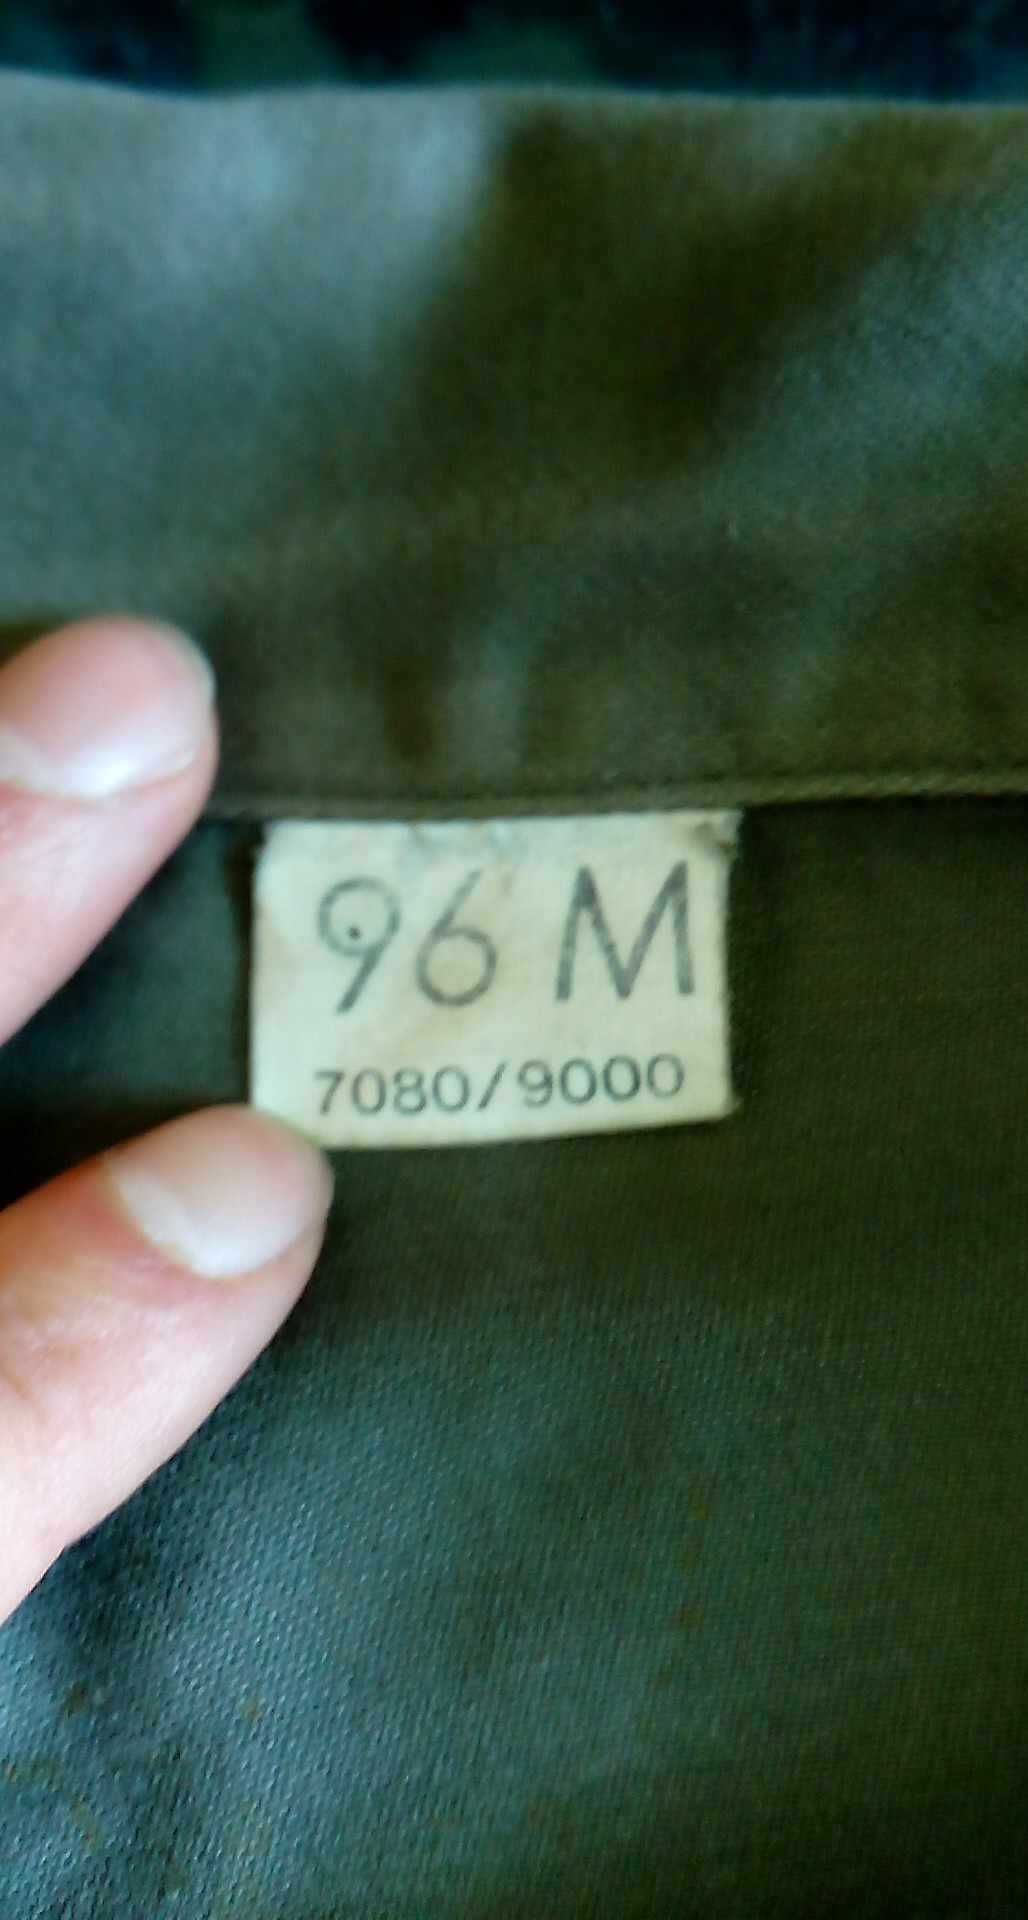 Bluza Armii Francuskiej/Legii Cudzoziemskiej Olive r96M 7080/9000